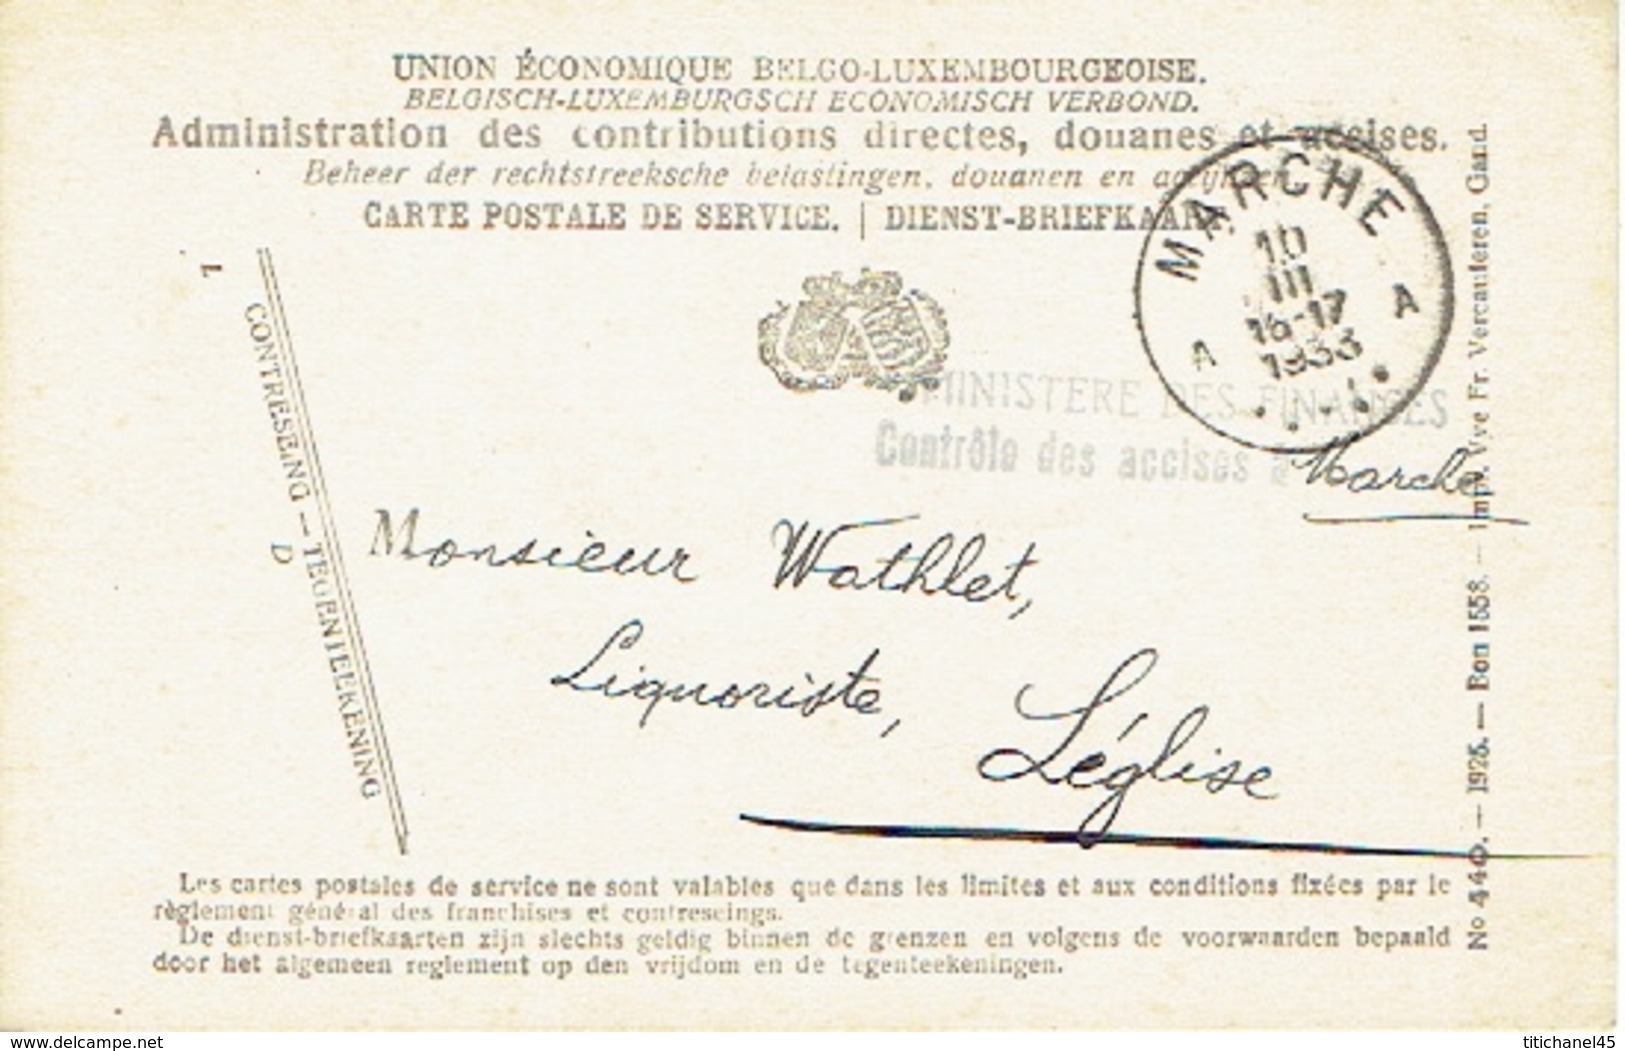 1933 Carte Postale De Service - MINISTERE DES FINANCES CONTROLE DES ACCISES à MARCHE Vers LEGLISE - Franchise